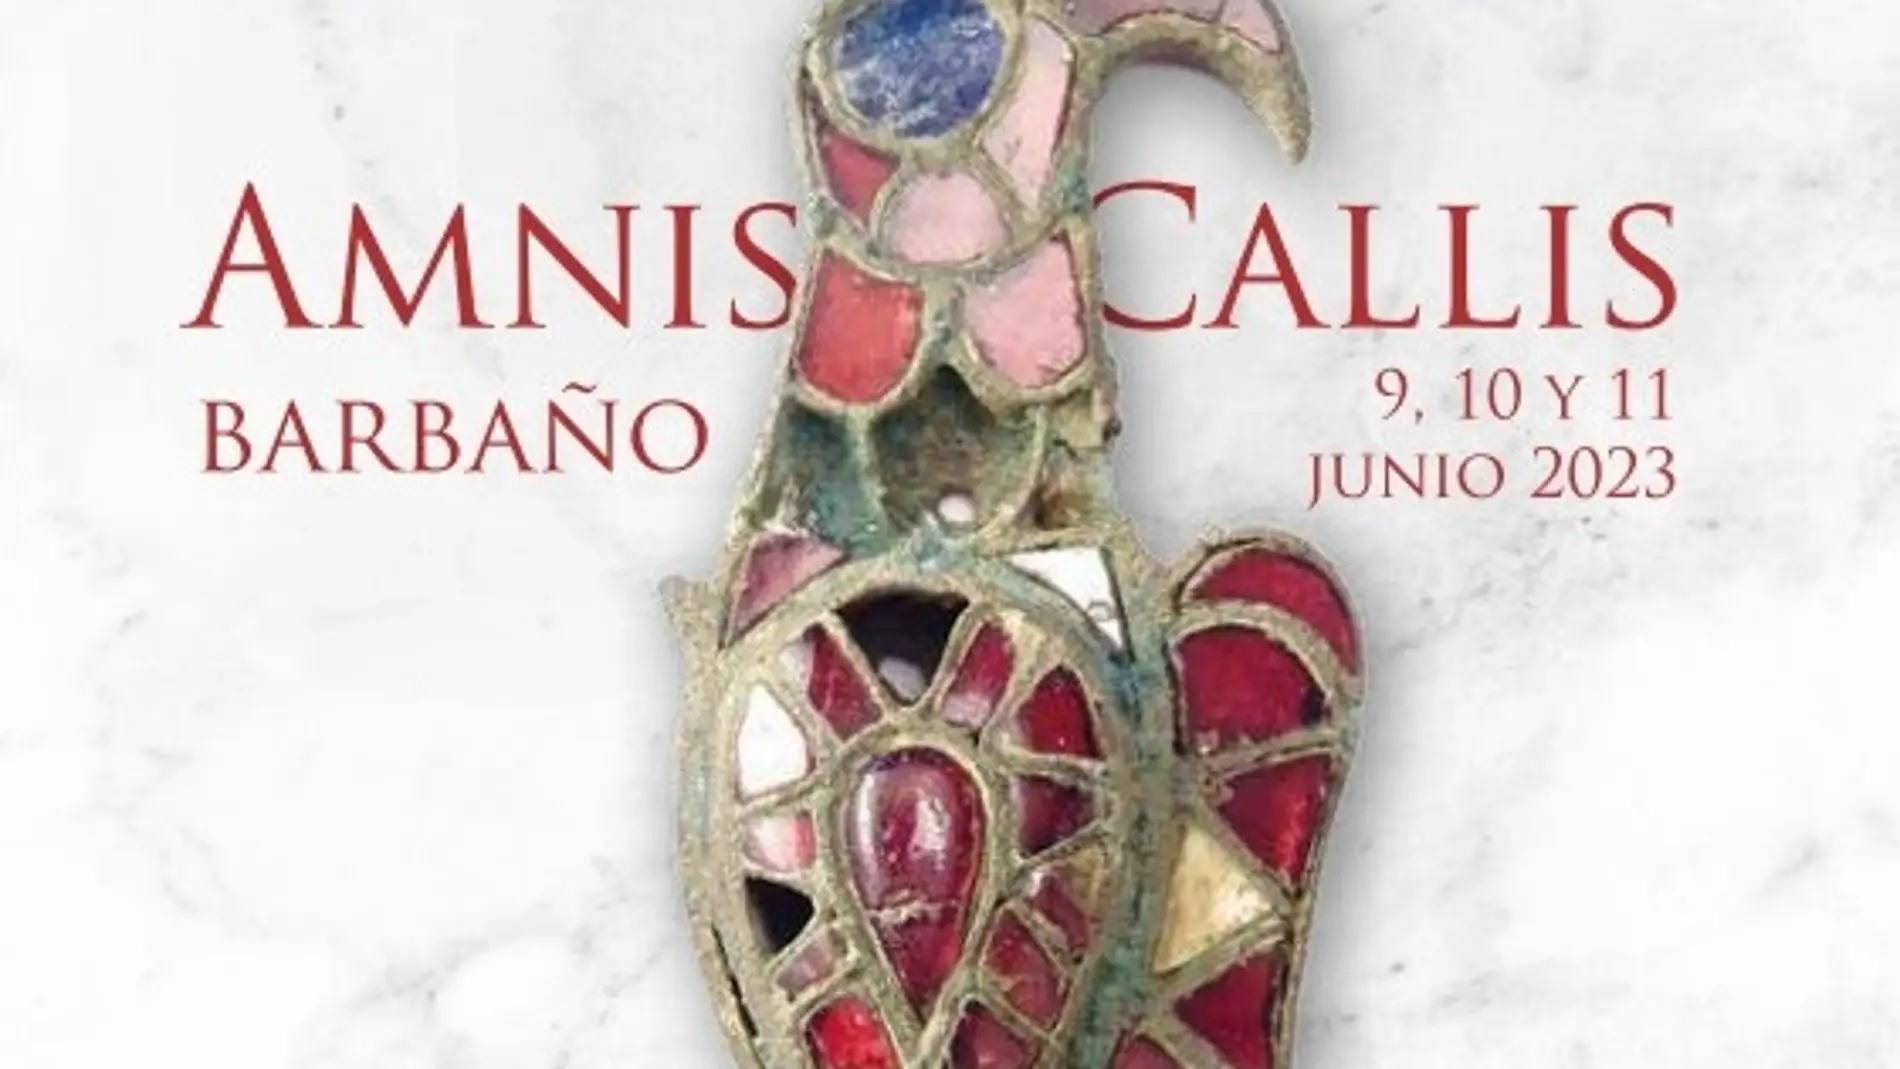 Barbaño regresa a su época romana con el Festival '"Amnis Callis" del 9 al 11 de junio